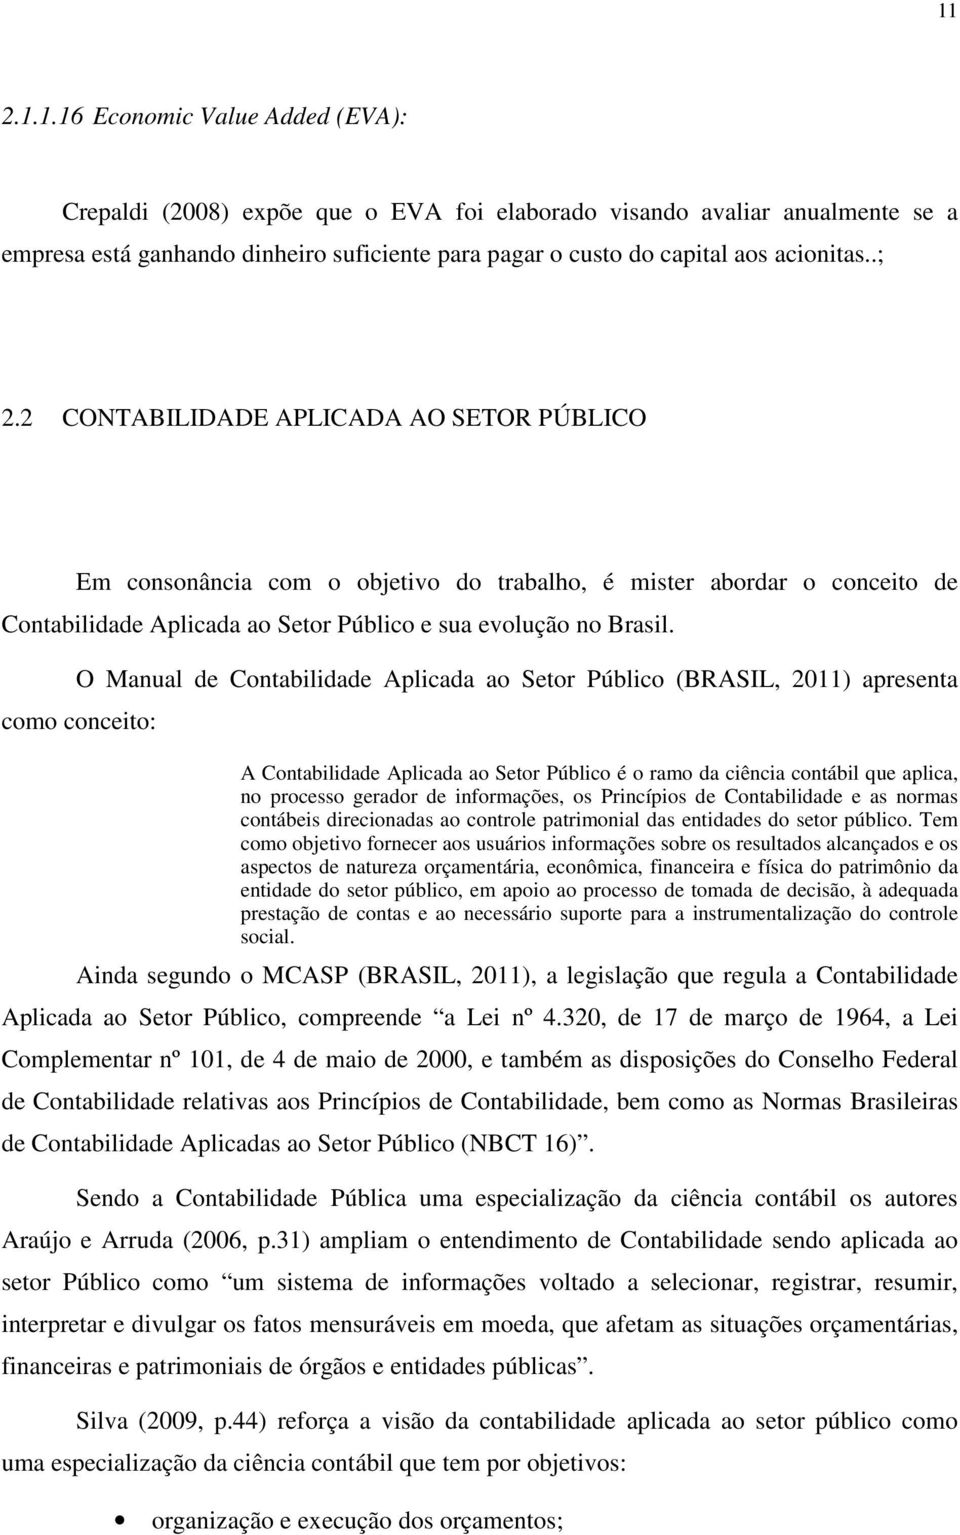 O Manual de Contabilidade Aplicada ao Setor Público (BRASIL, 2011) apresenta como conceito: A Contabilidade Aplicada ao Setor Público é o ramo da ciência contábil que aplica, no processo gerador de